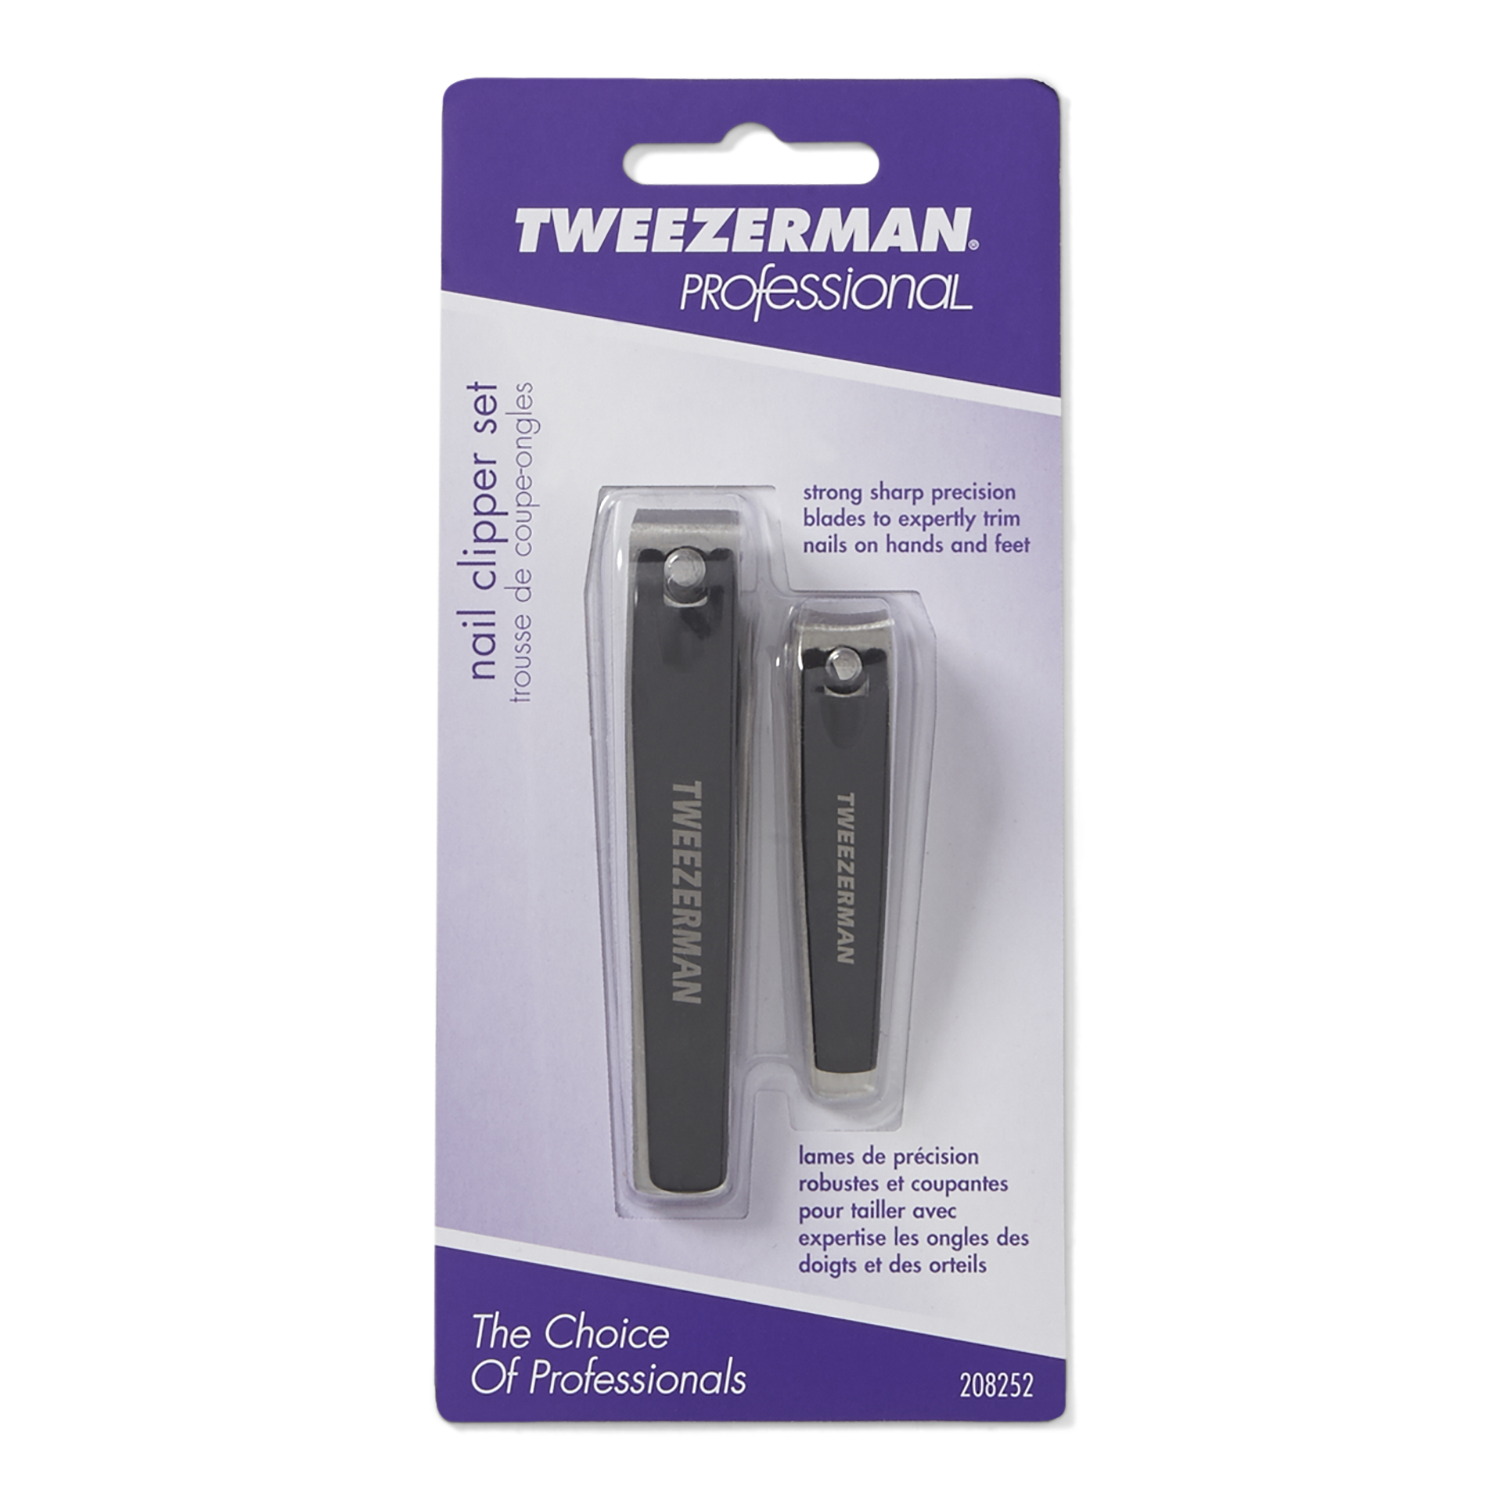 tweezerman nail clipper set review